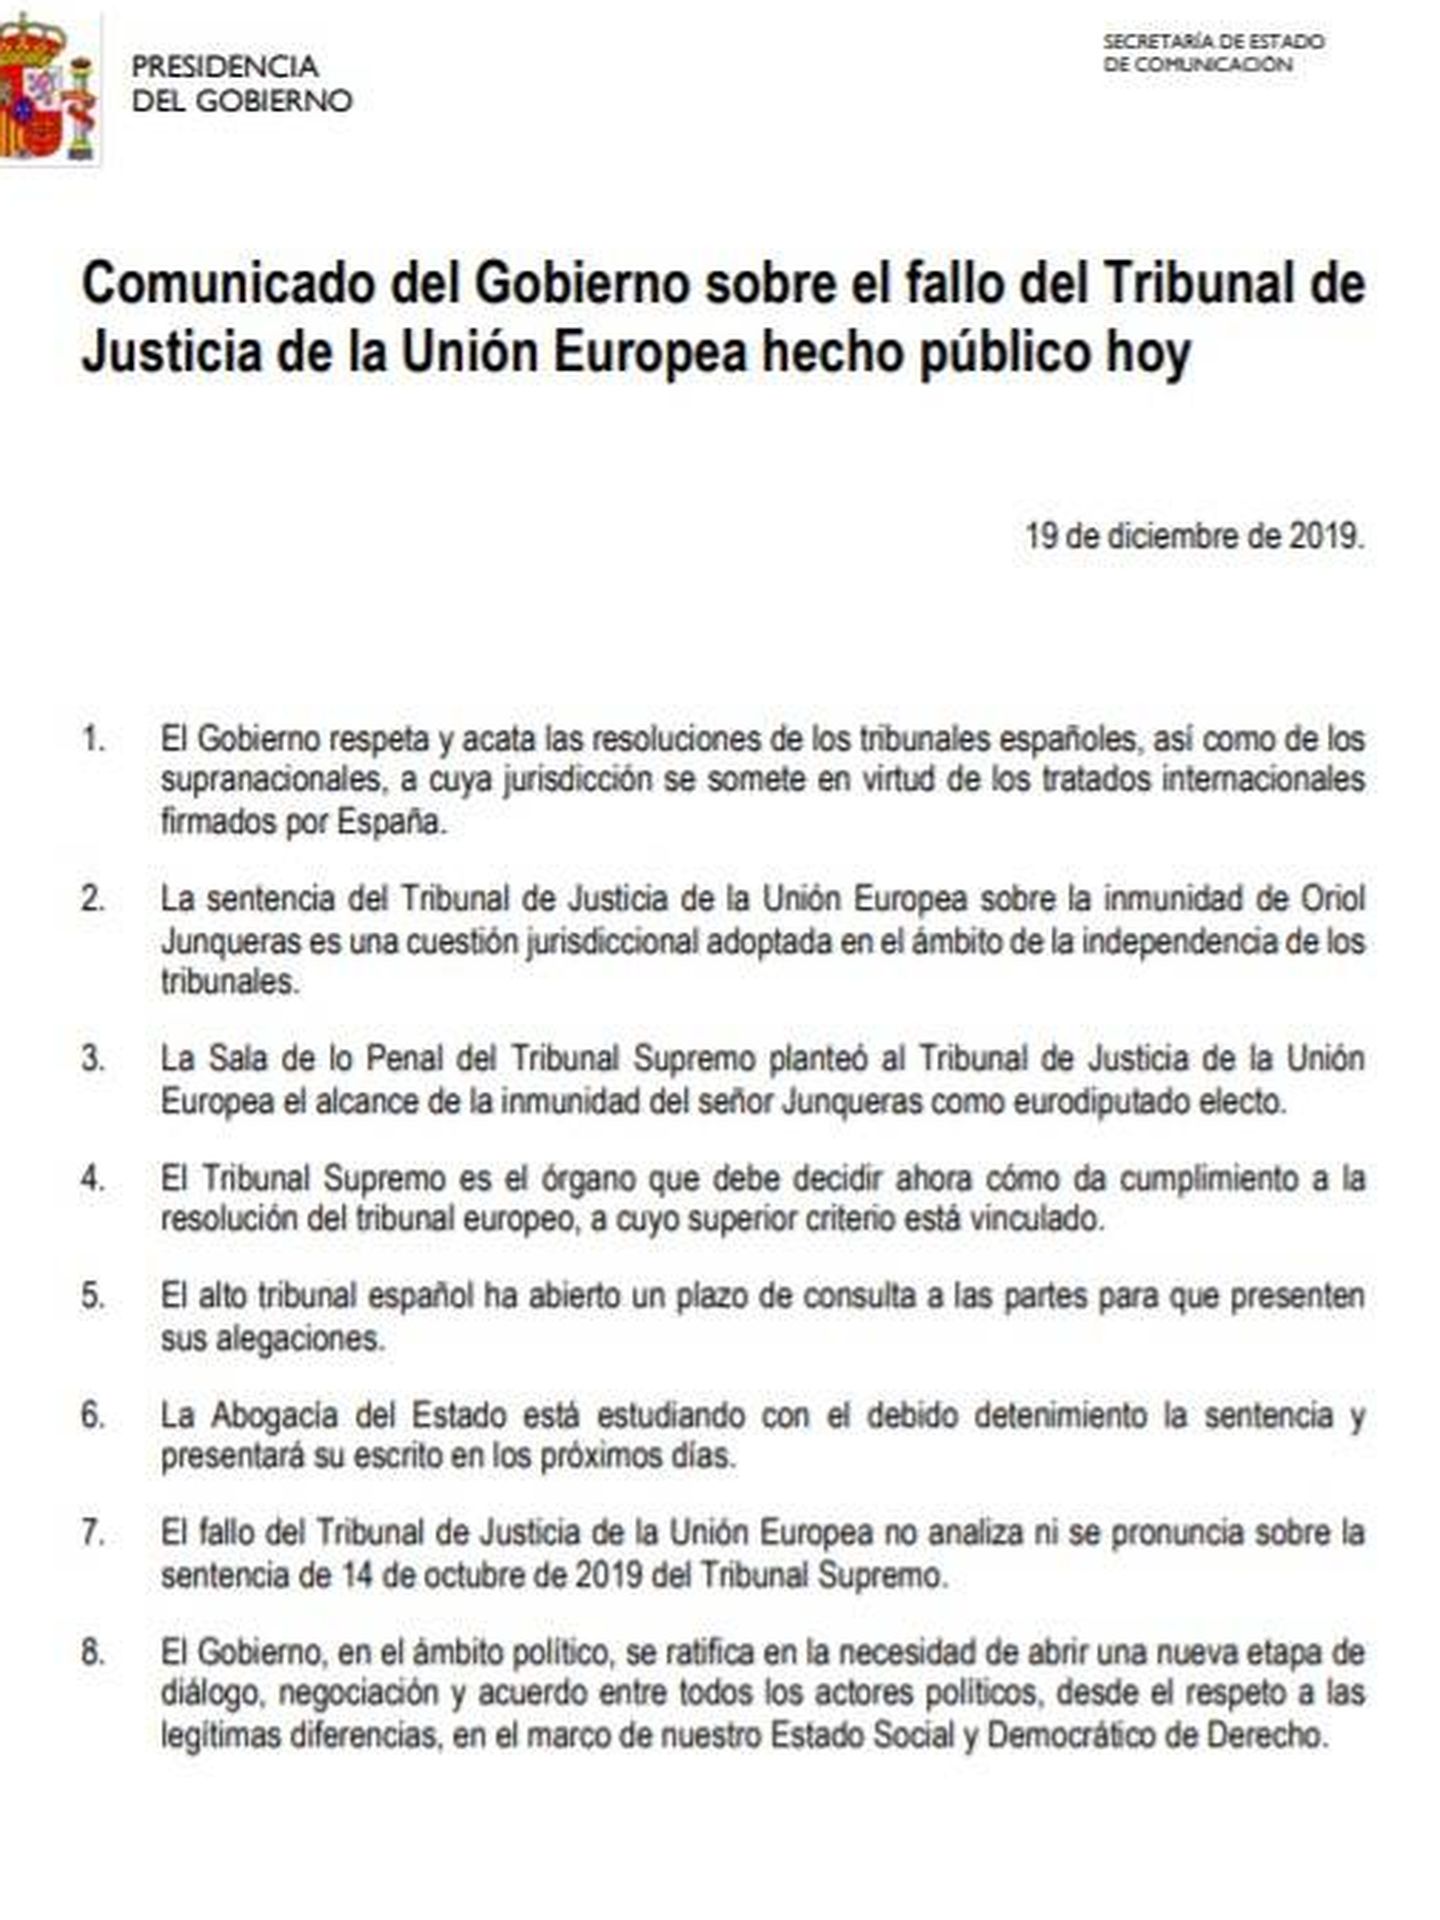 Consulte aquí el comunicado del Gobierno sobre la sentencia del Tribunal de Justicia de la Unión Europea sobre Oriol Junqueras. 